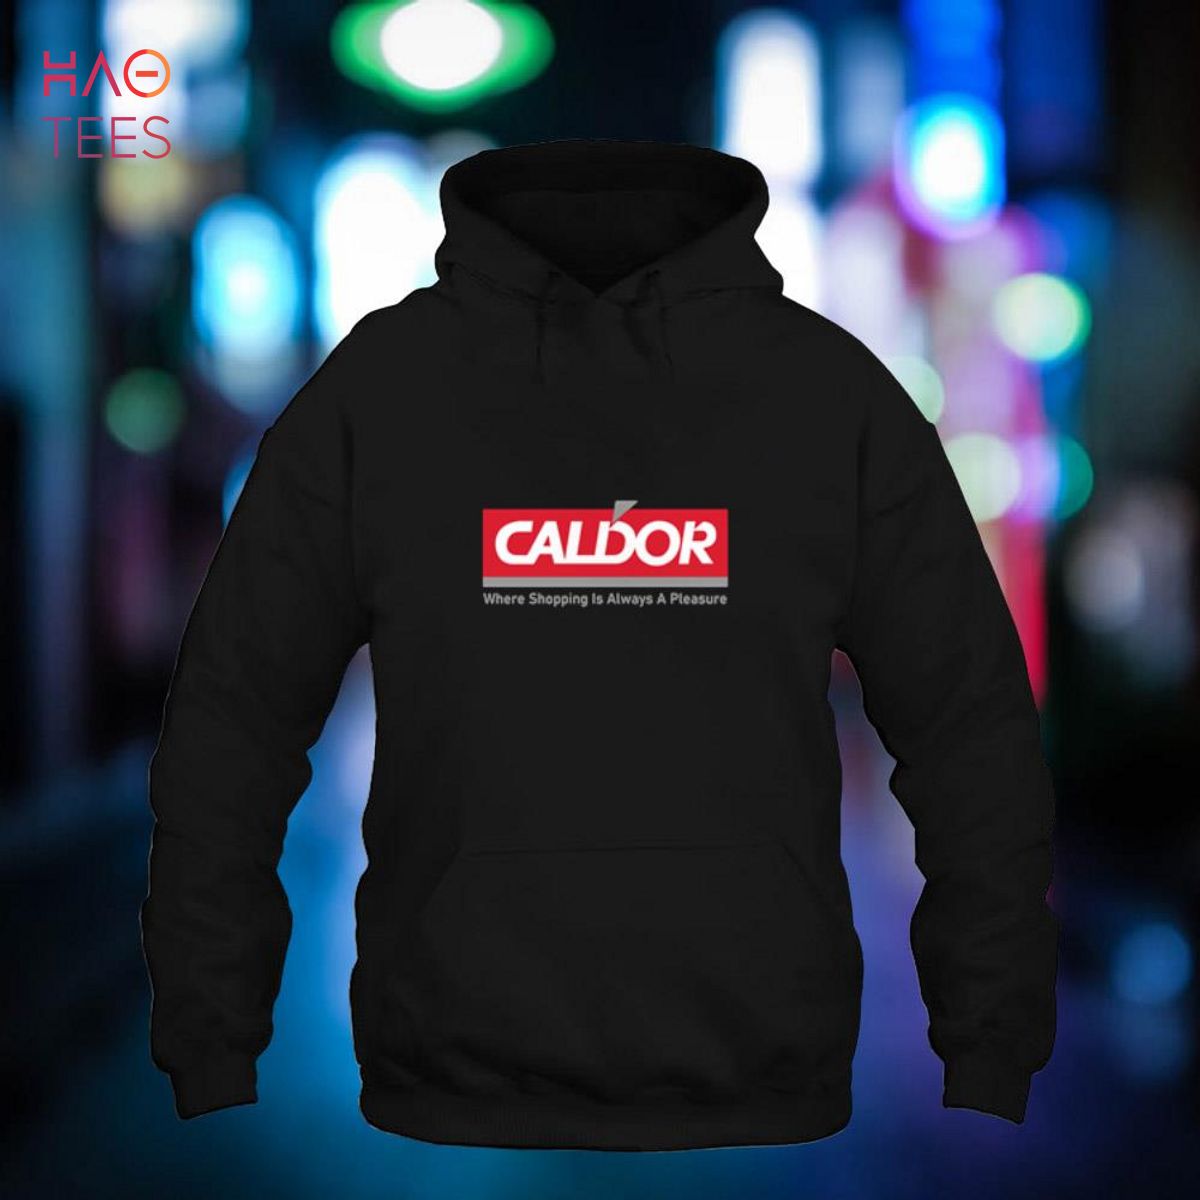 CALDOR - Where Shopping Is Always A Pleasure Shirt